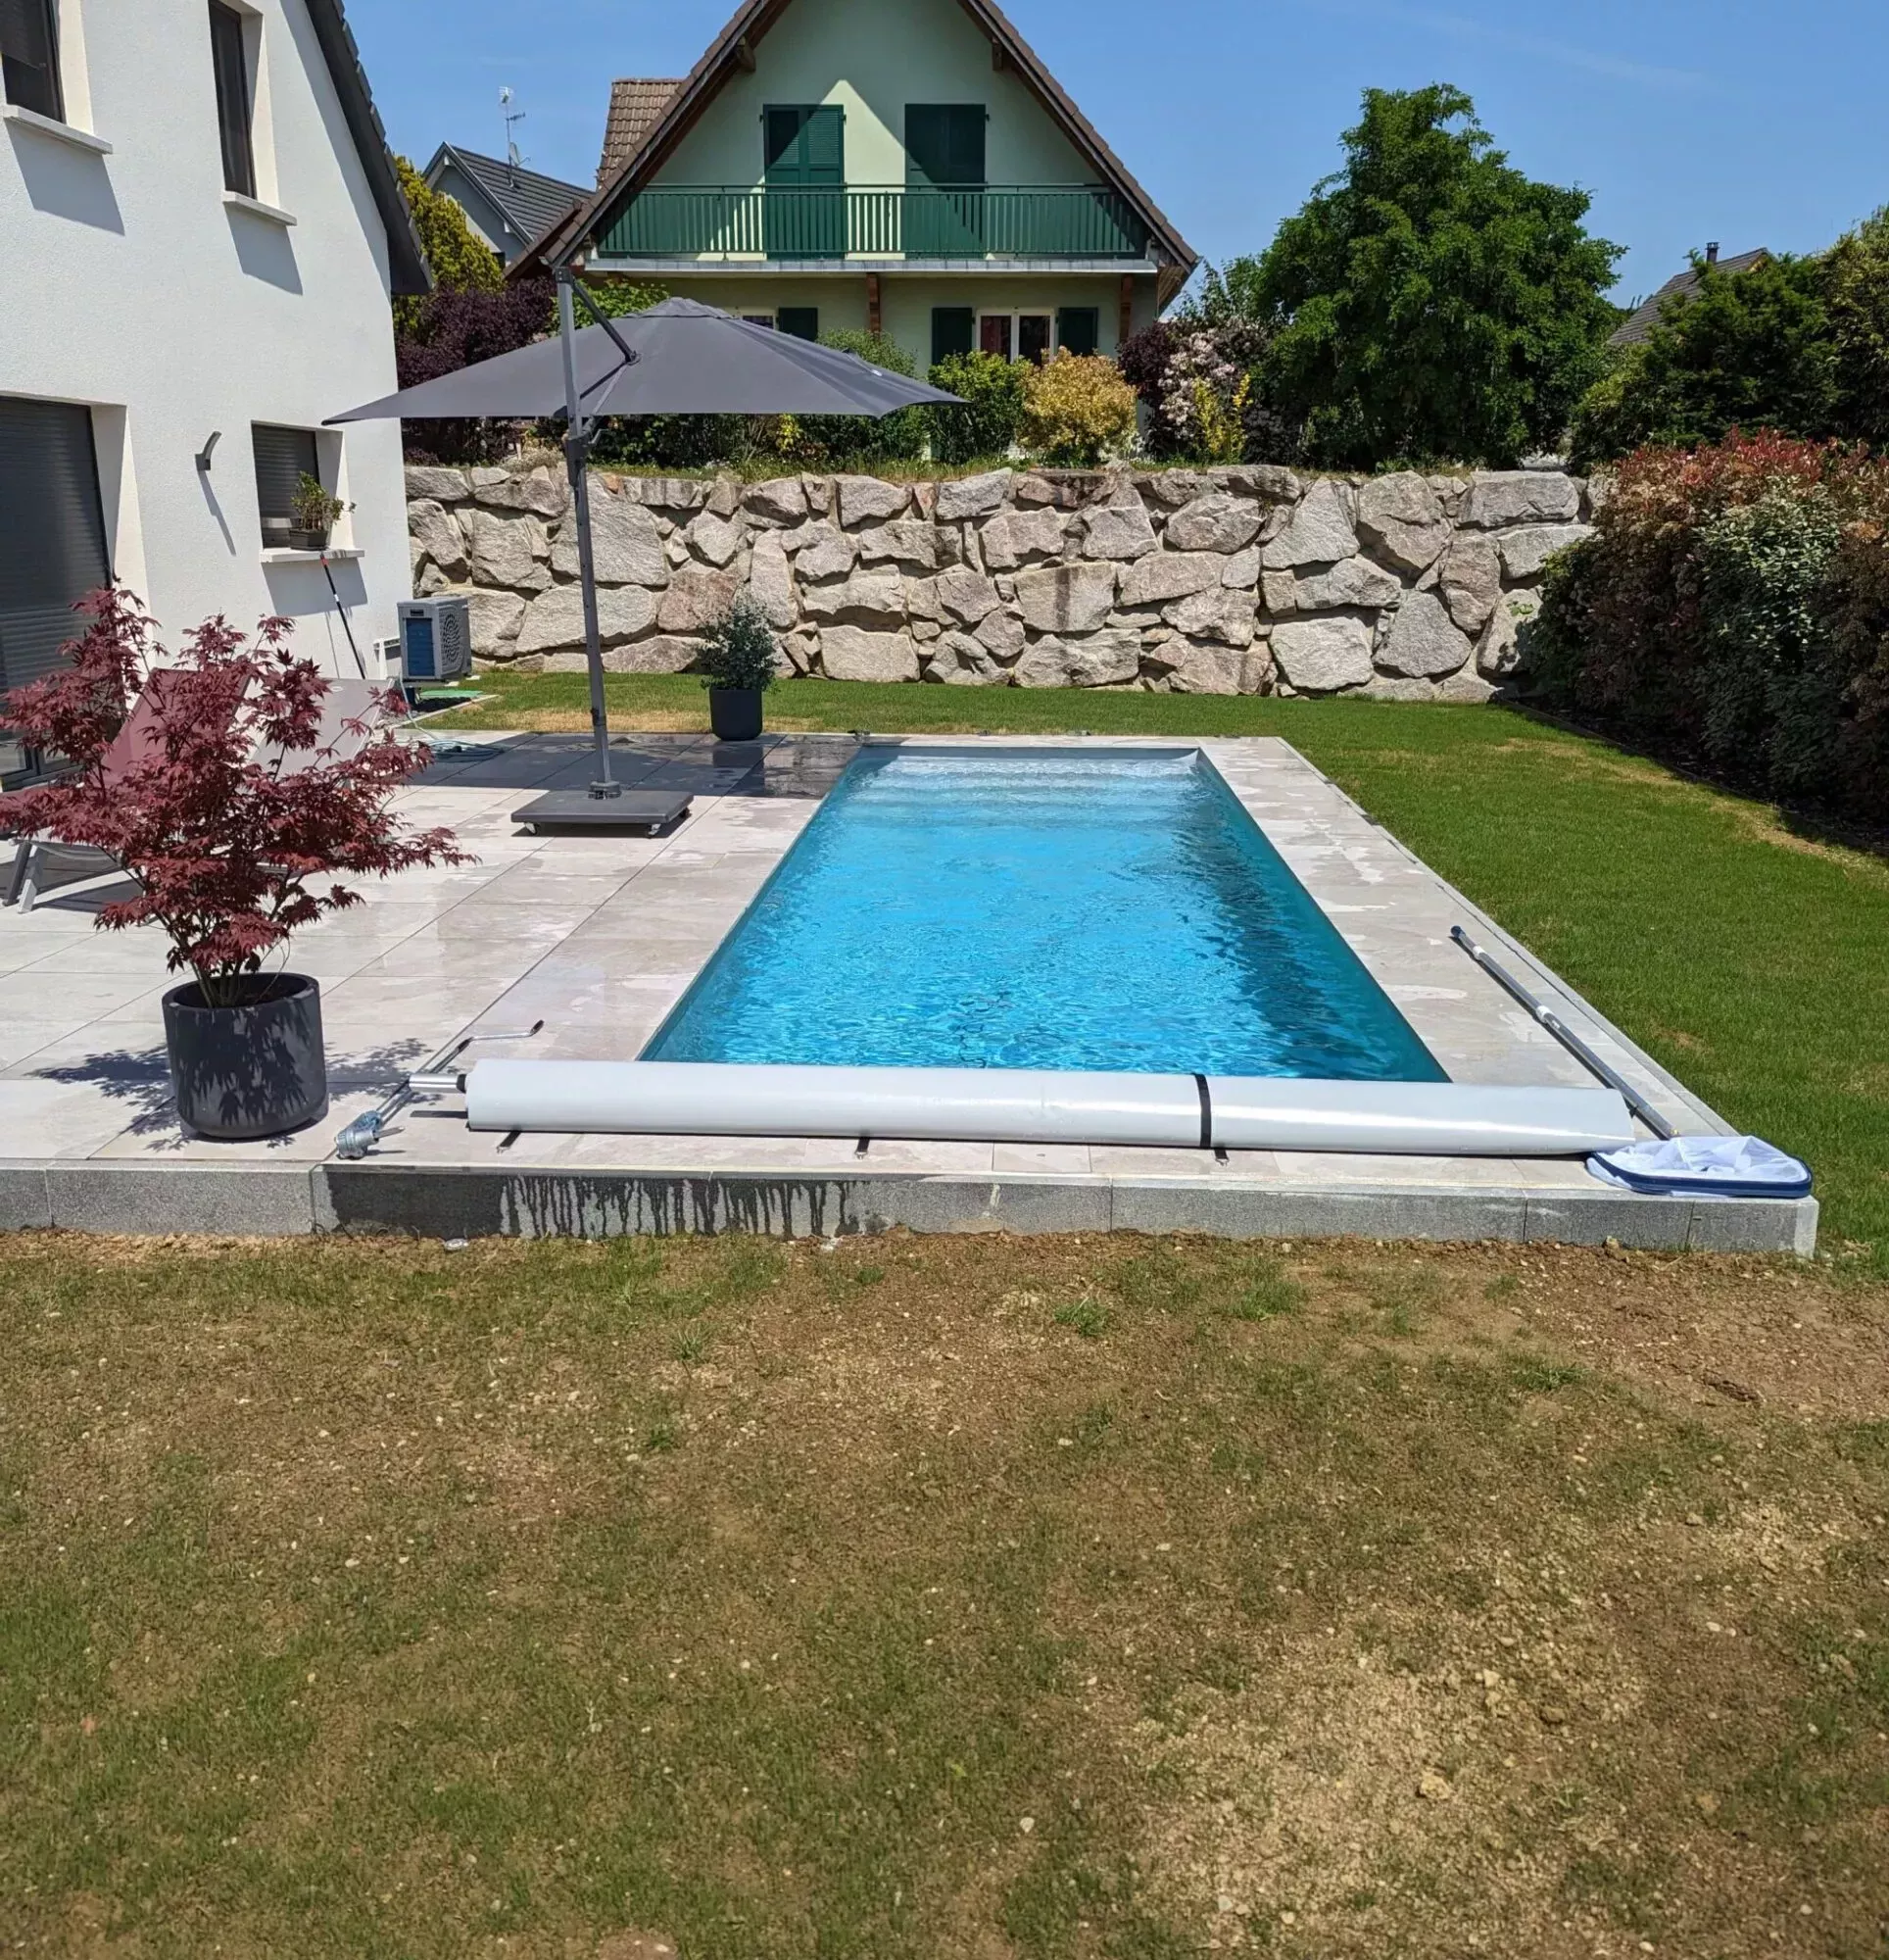 Concevez la piscine de vos rêves avec CG Concept Paysage et Mondial Piscine à ASPACH et dans le Haut-Rhin. Kingersheim